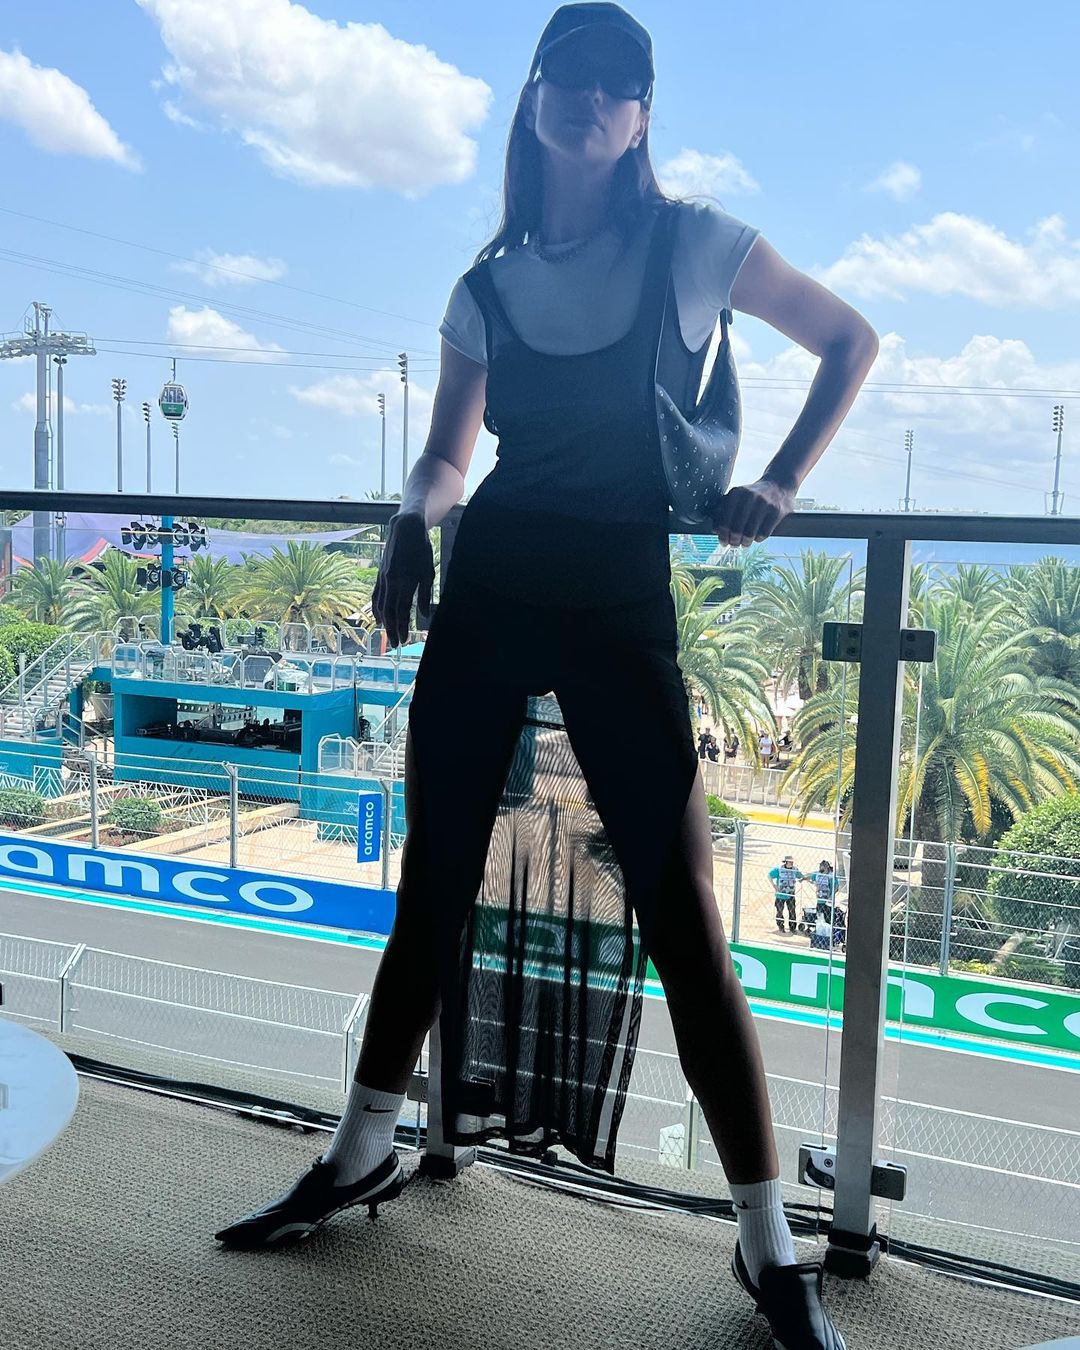 Tom Brady’s Girl Irina Shayk Hits the Tennis Court in Heels! - Photo 54